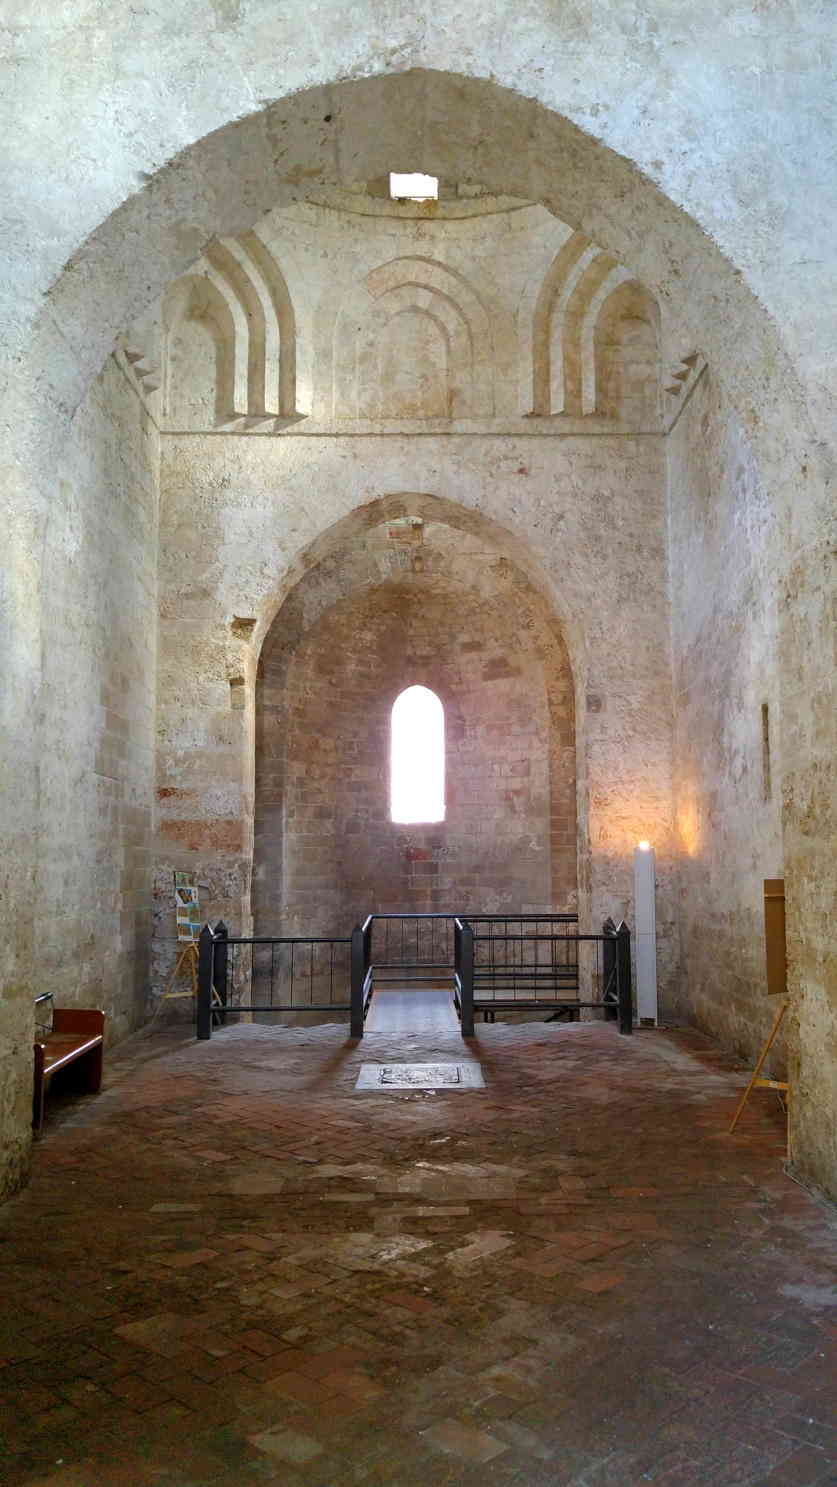 San Giovanni degli Eremiti - nave central y ábside